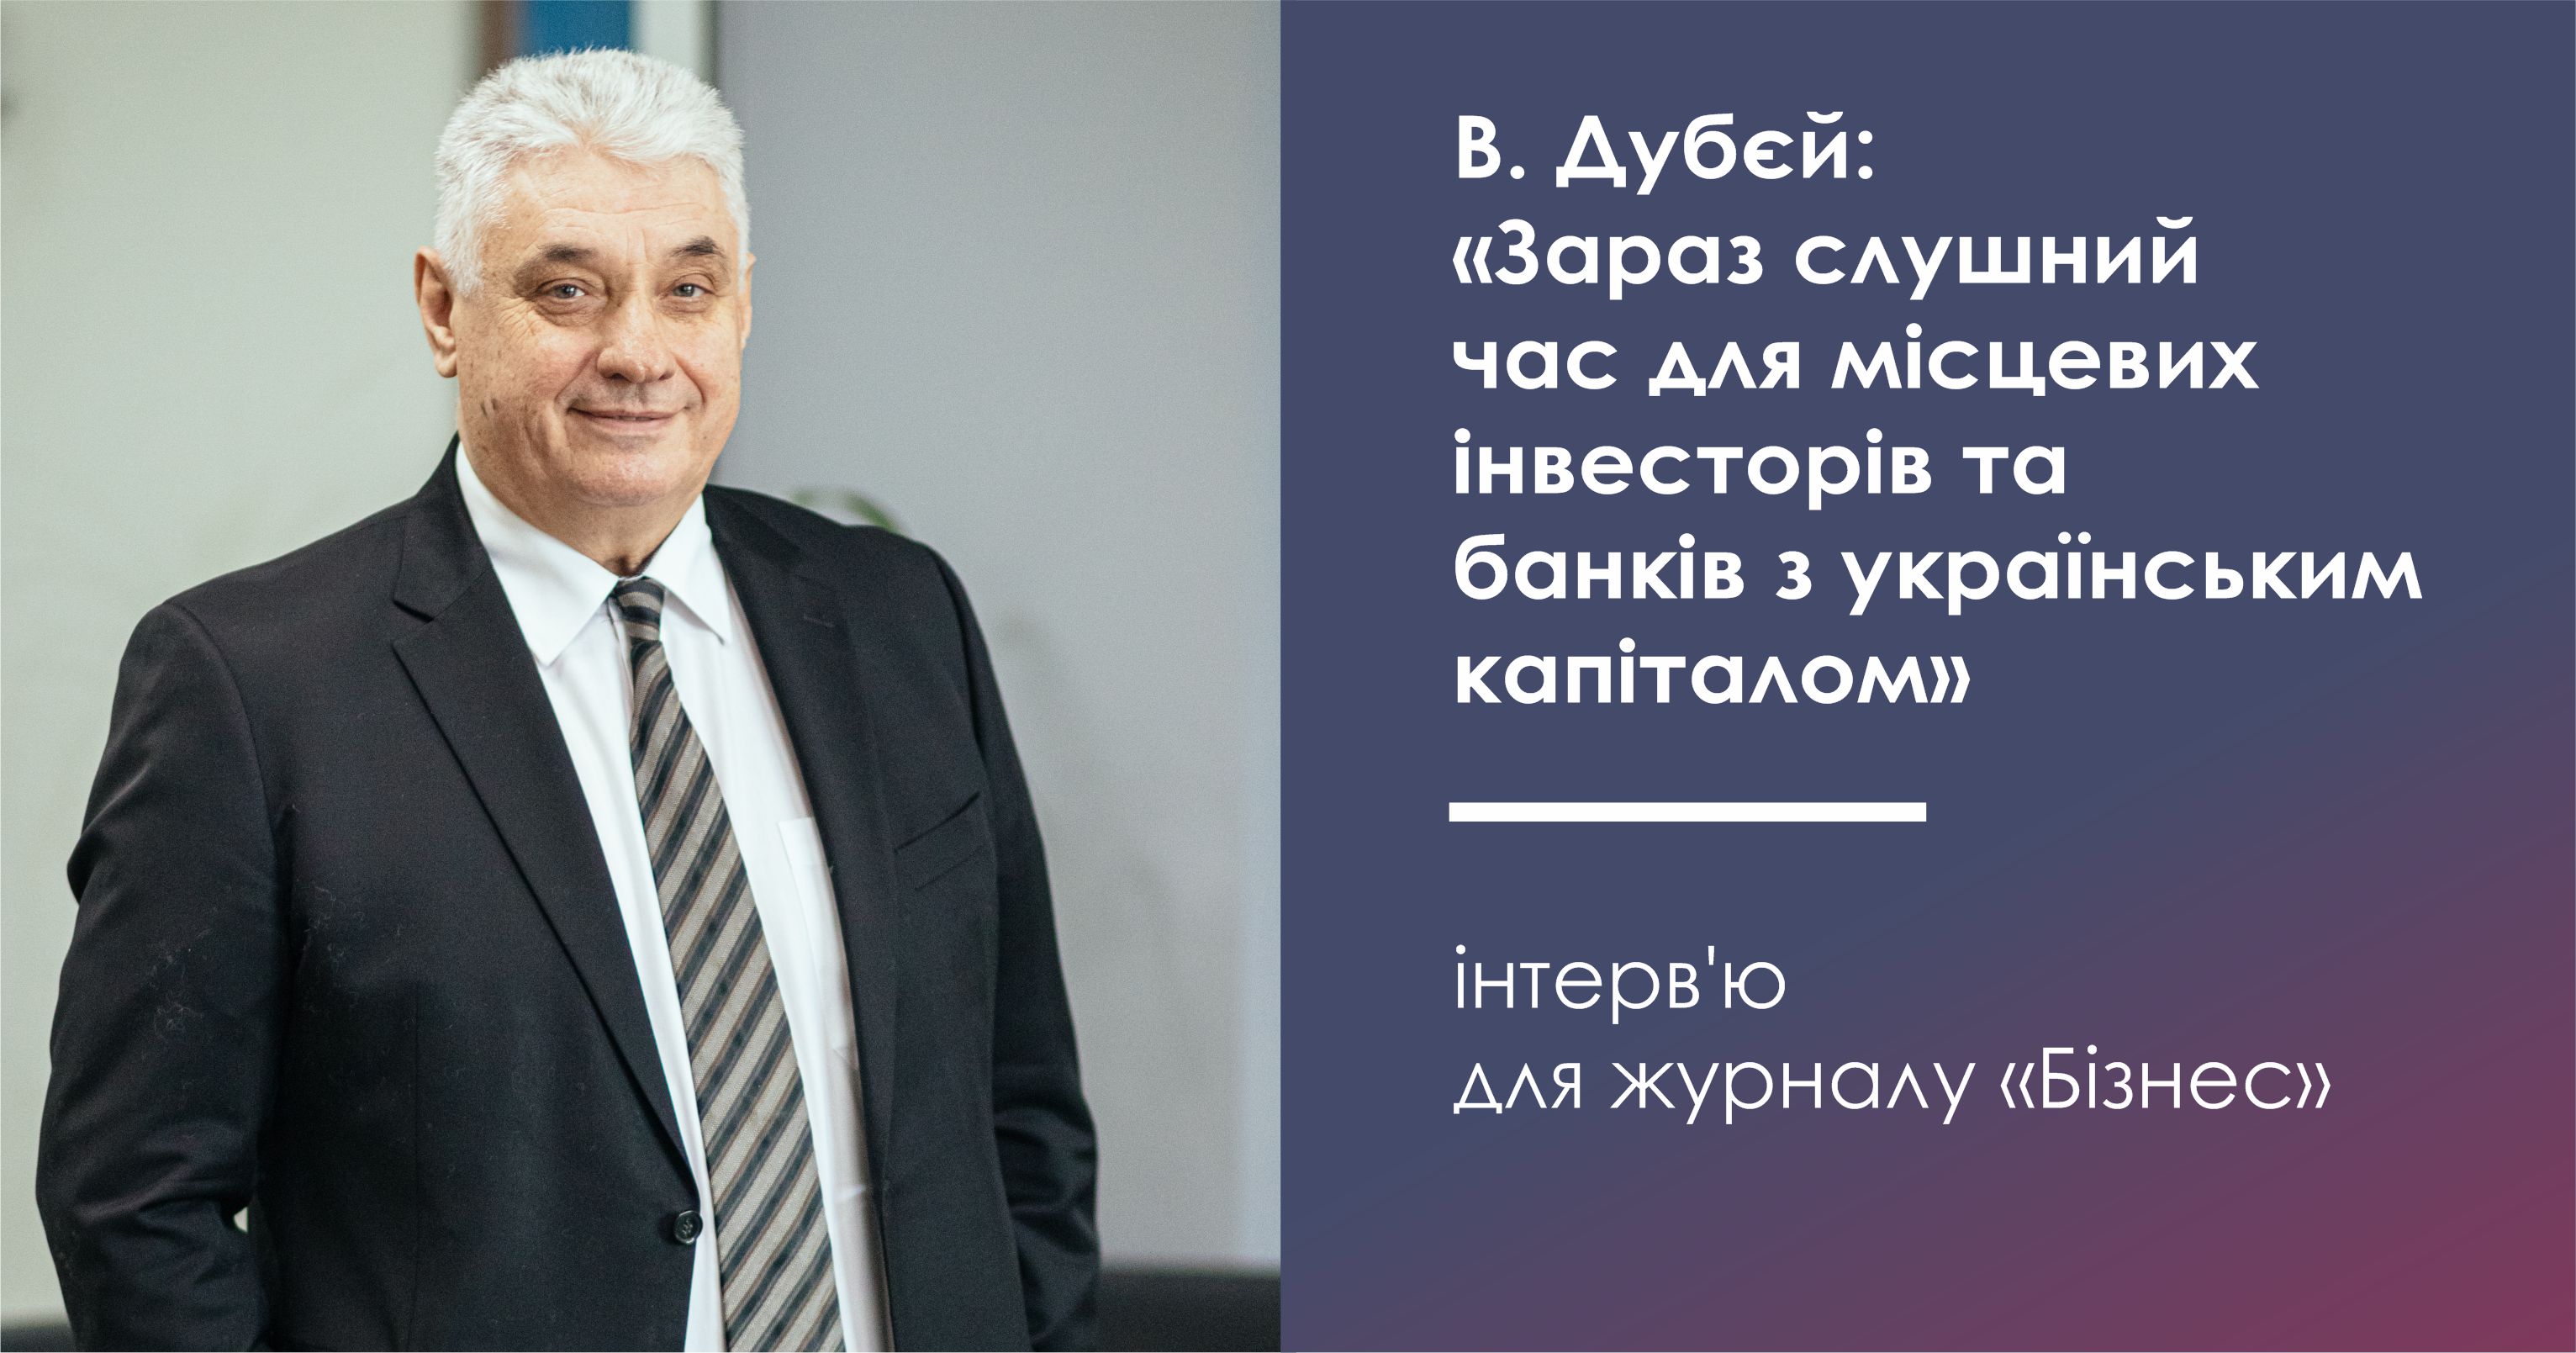 Володимир Дубєй: «Зараз слушний час для місцевих інвесторів та банків з українським капіталом»